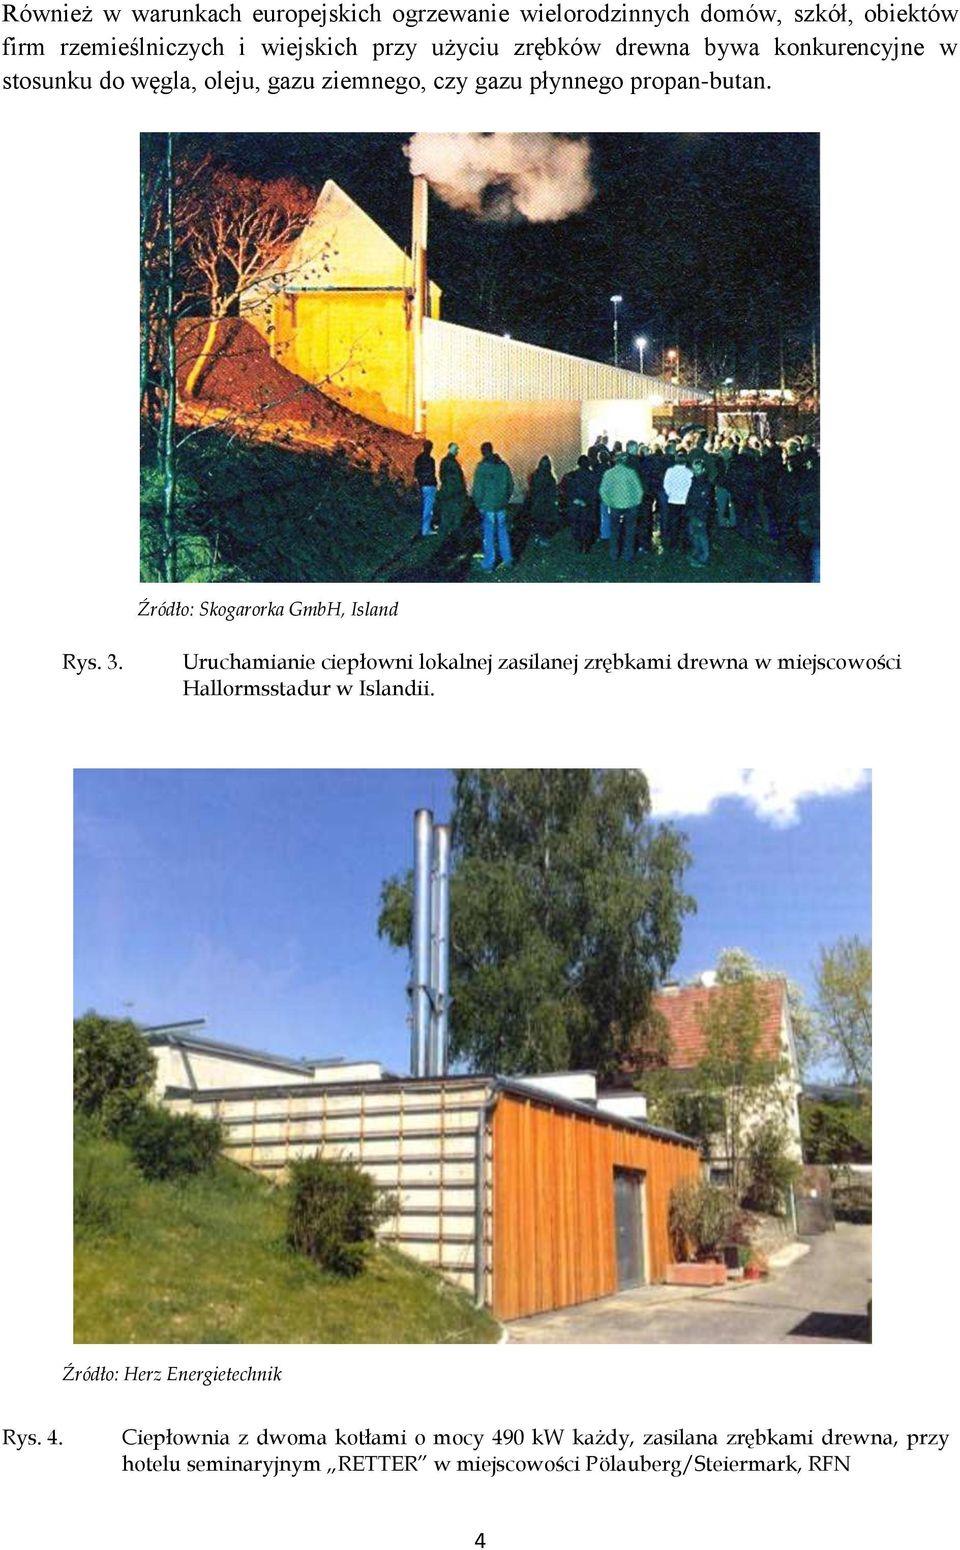 Uruchamianie ciepłowni lokalnej zasilanej zrębkami drewna w miejscowości Hallormsstadur w Islandii. Źródło: Herz Energietechnik Rys. 4.